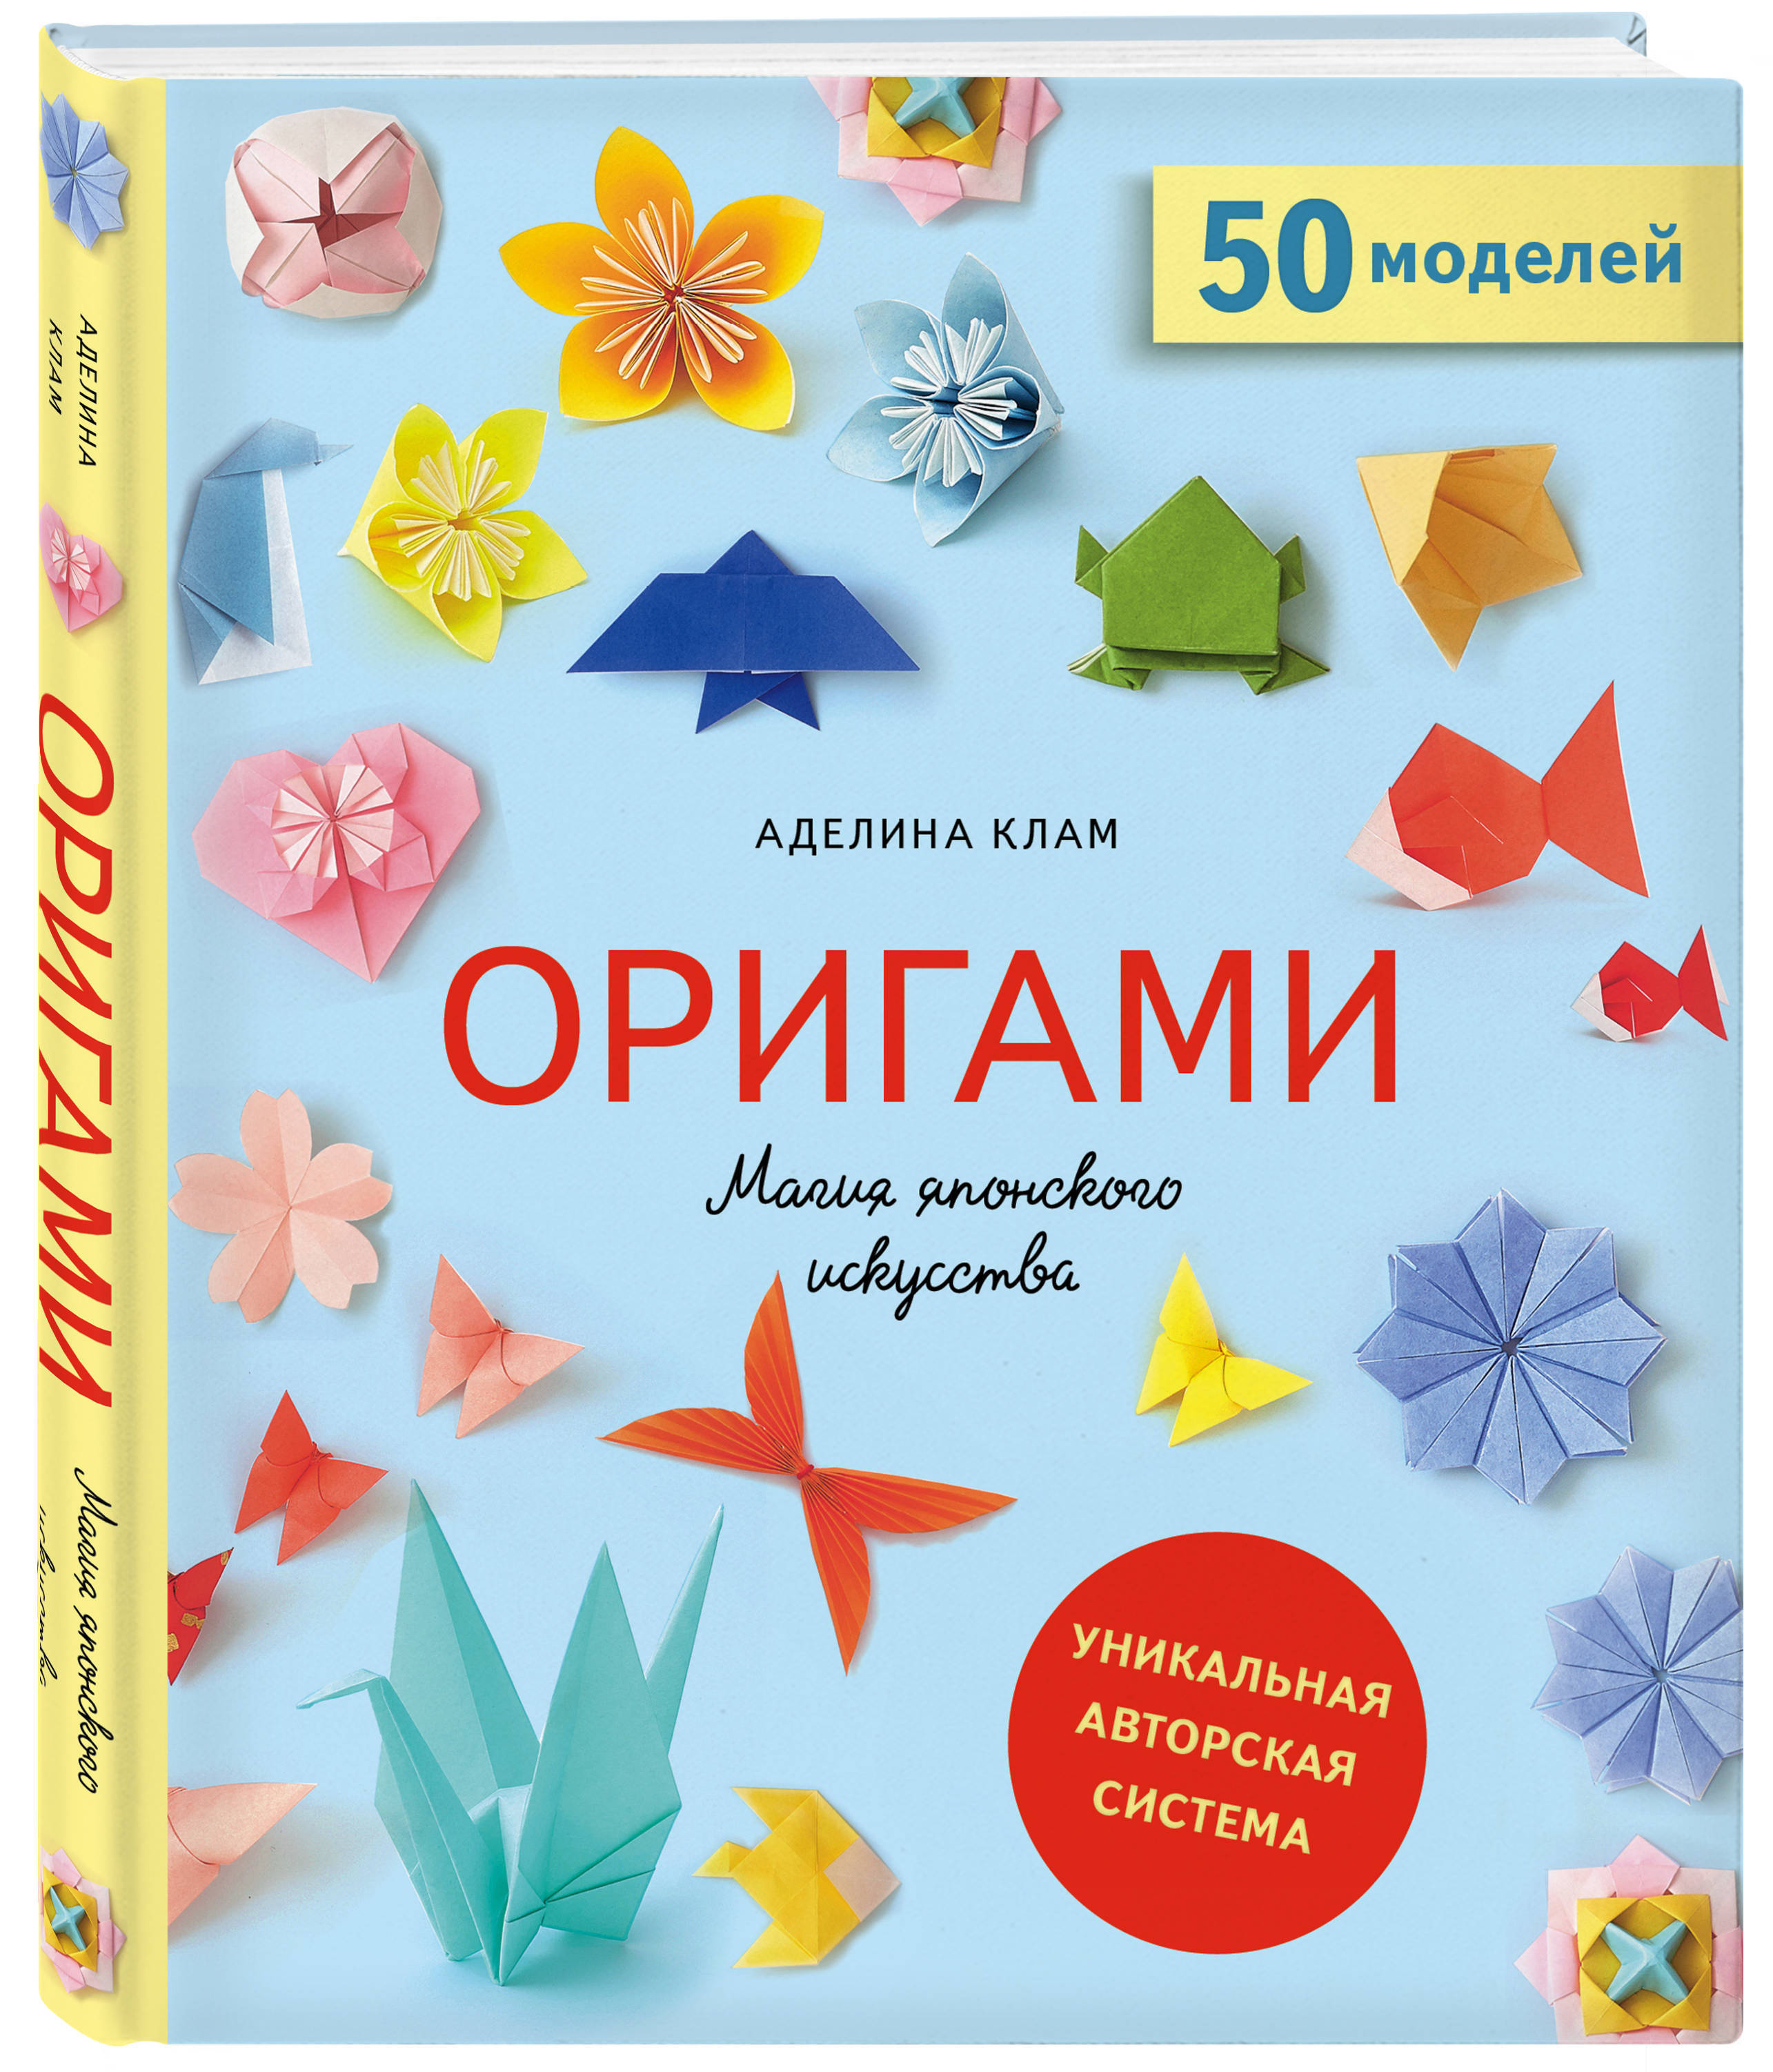 Легкие оригами из бумаги: 10 простых схем